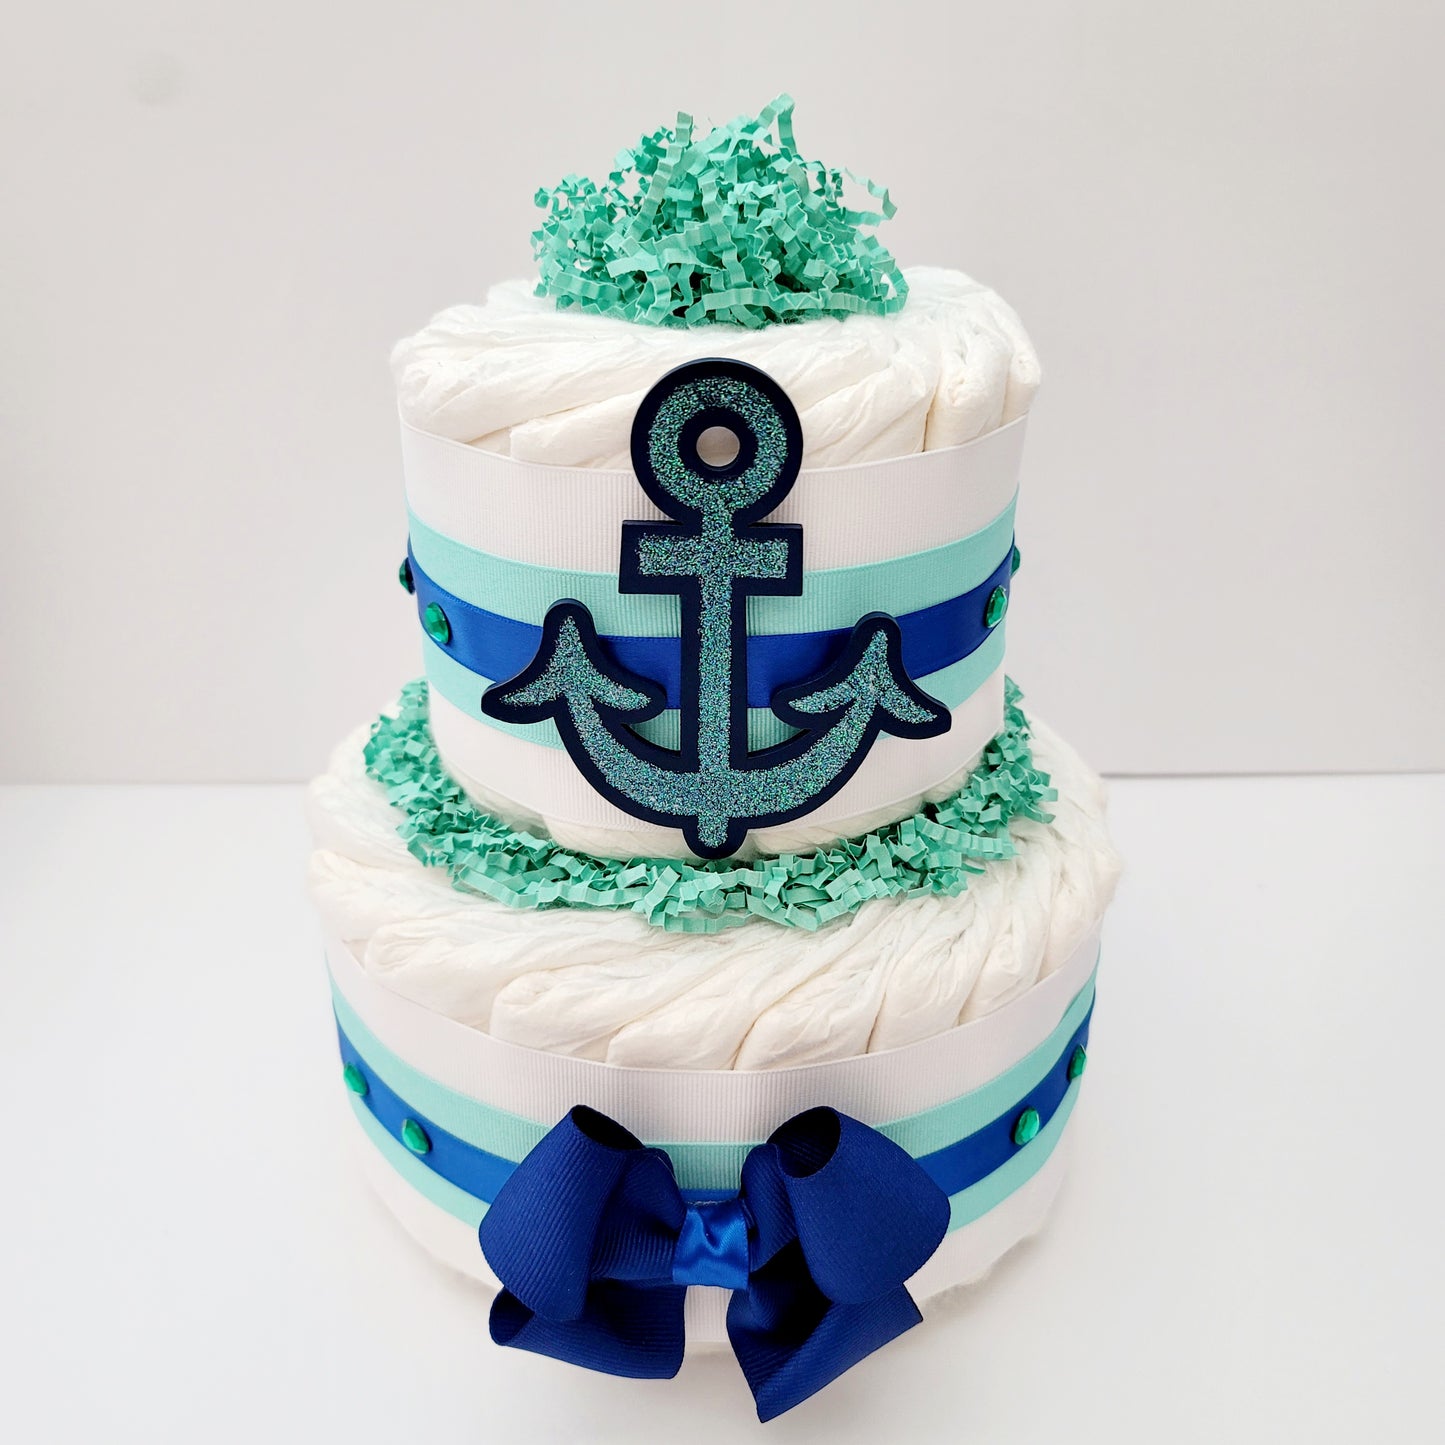 Navy Nautical Baby Diaper Cake